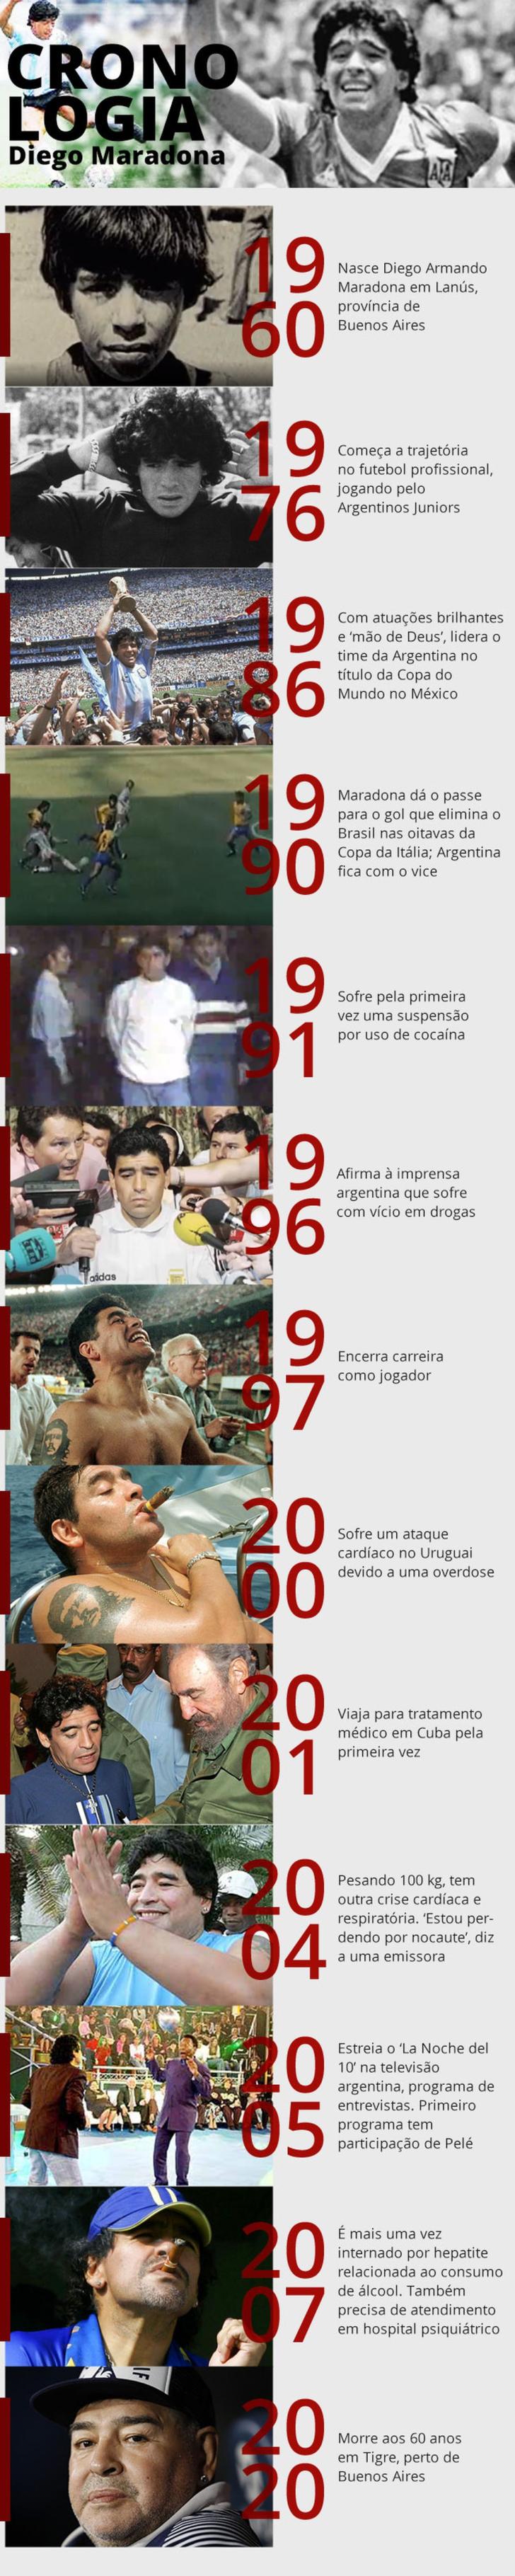 Cronologia - Linha do tempo de Diego Maradona — Foto: Amanda Paes/G1